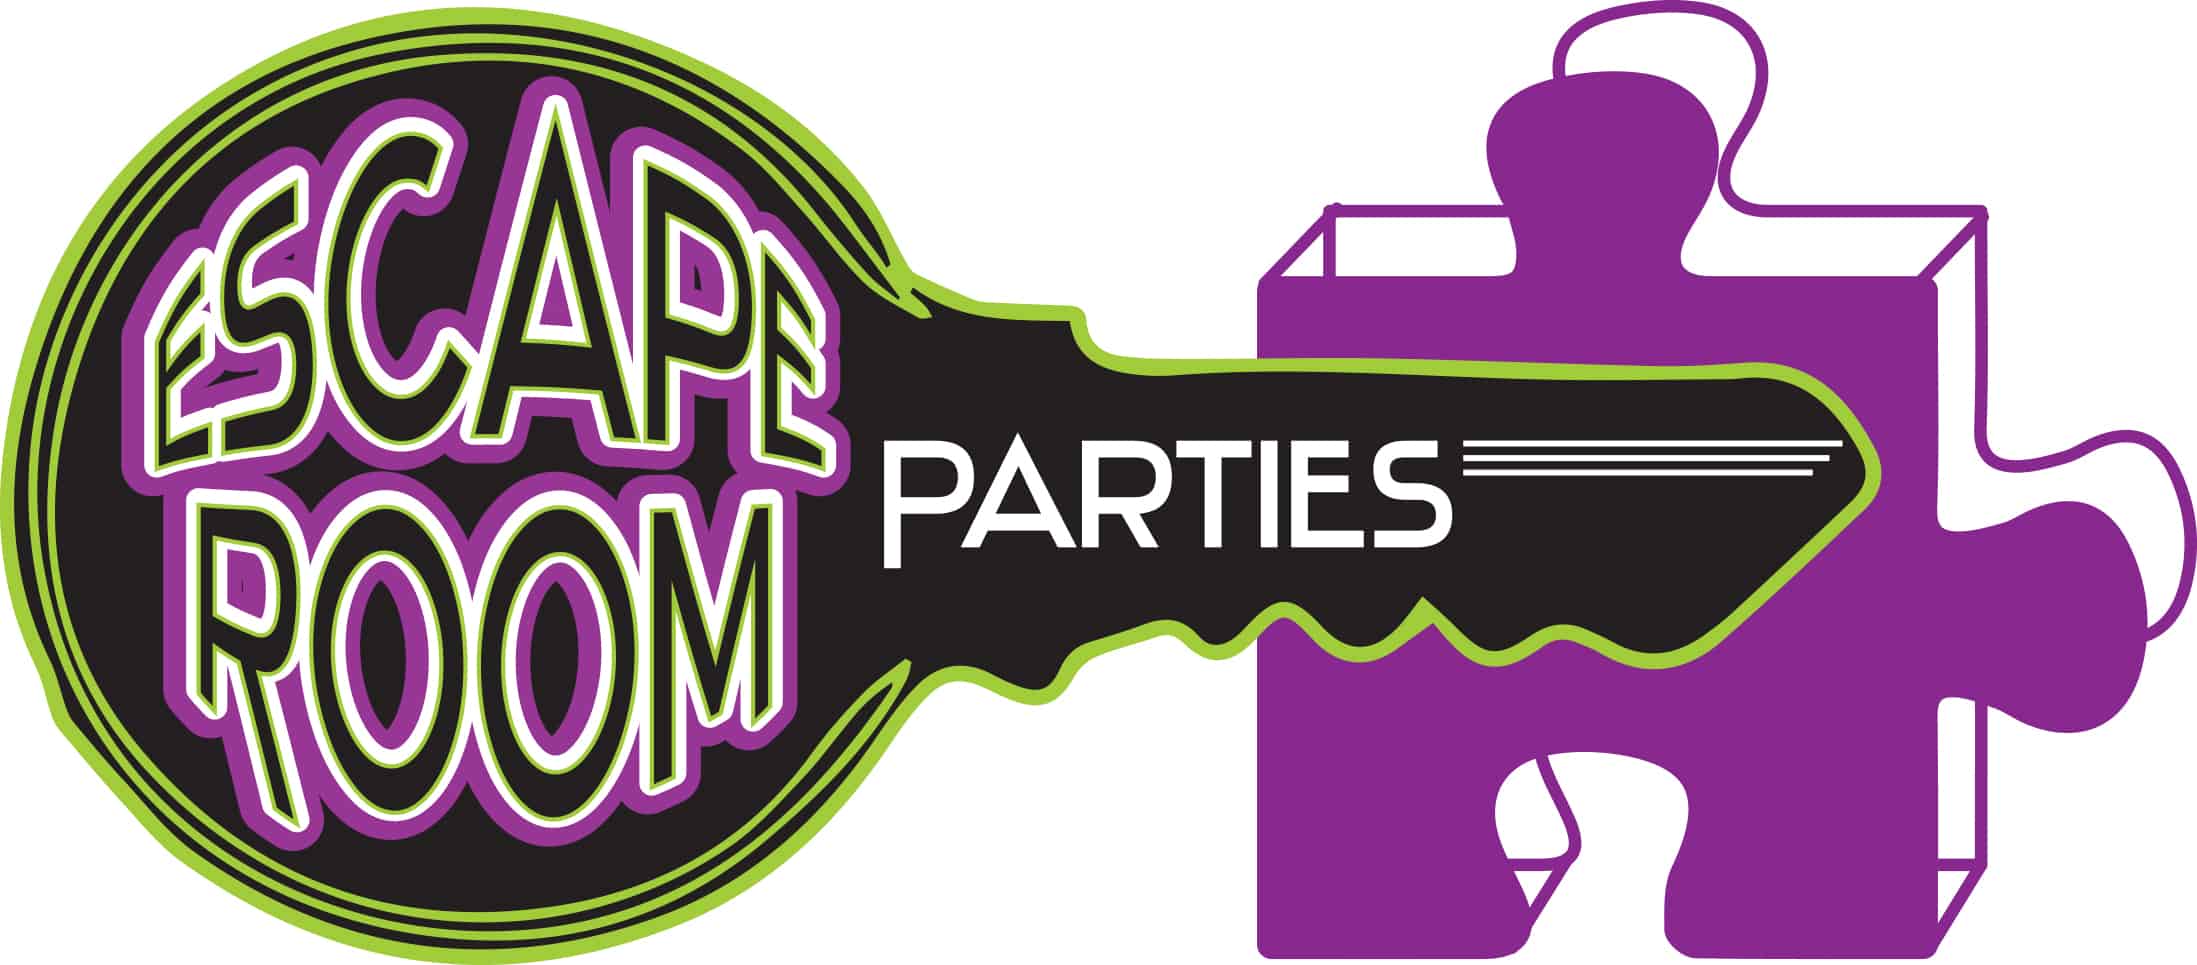 Escape Room Parties